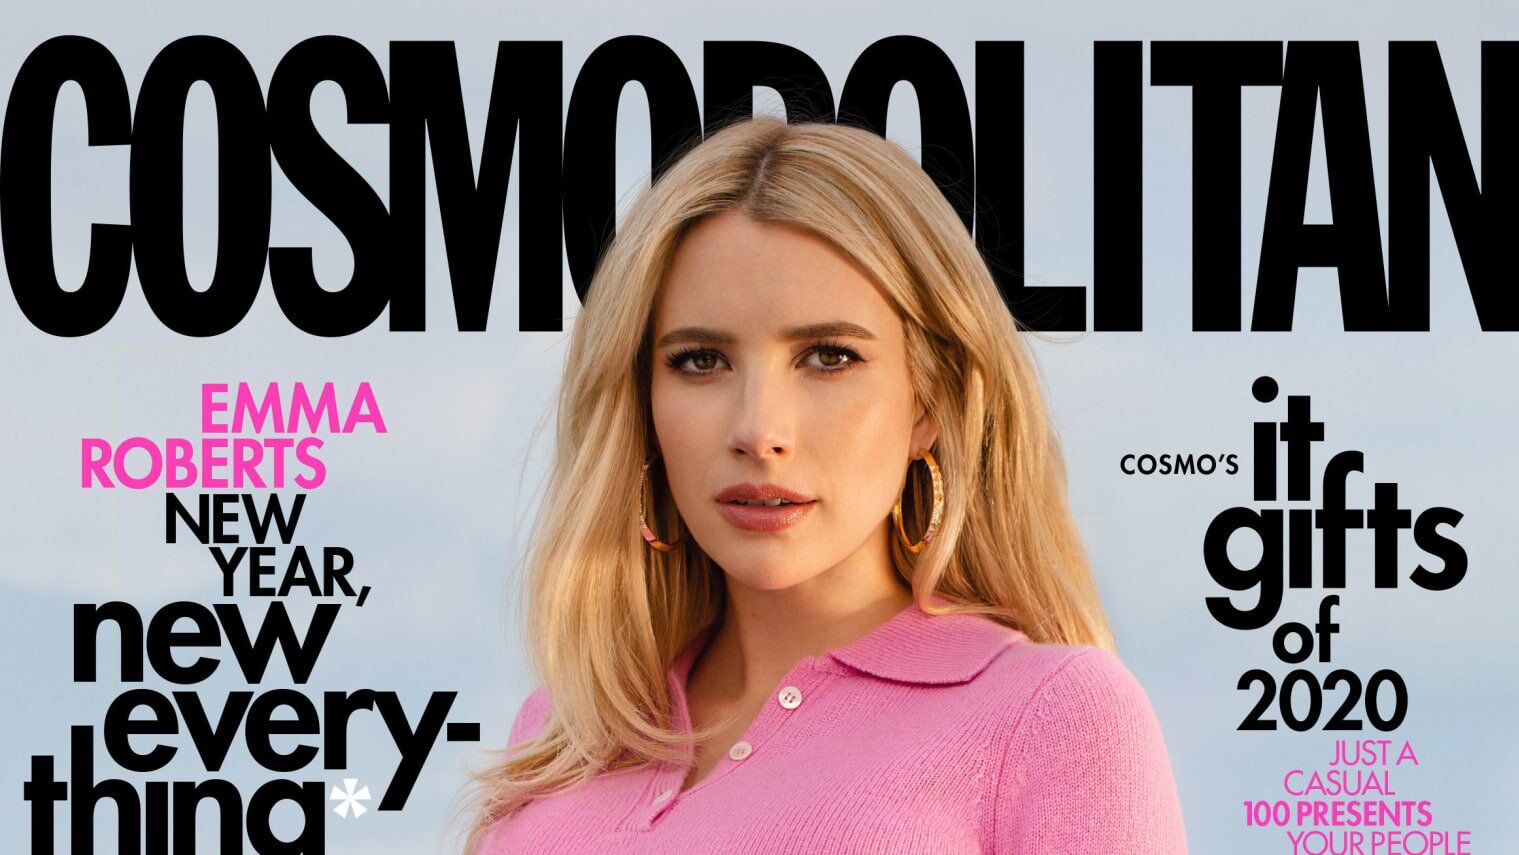 Эмма Робертс стала первой беременной женщиной, которая украсила обложку журнала "Cosmopolitan"